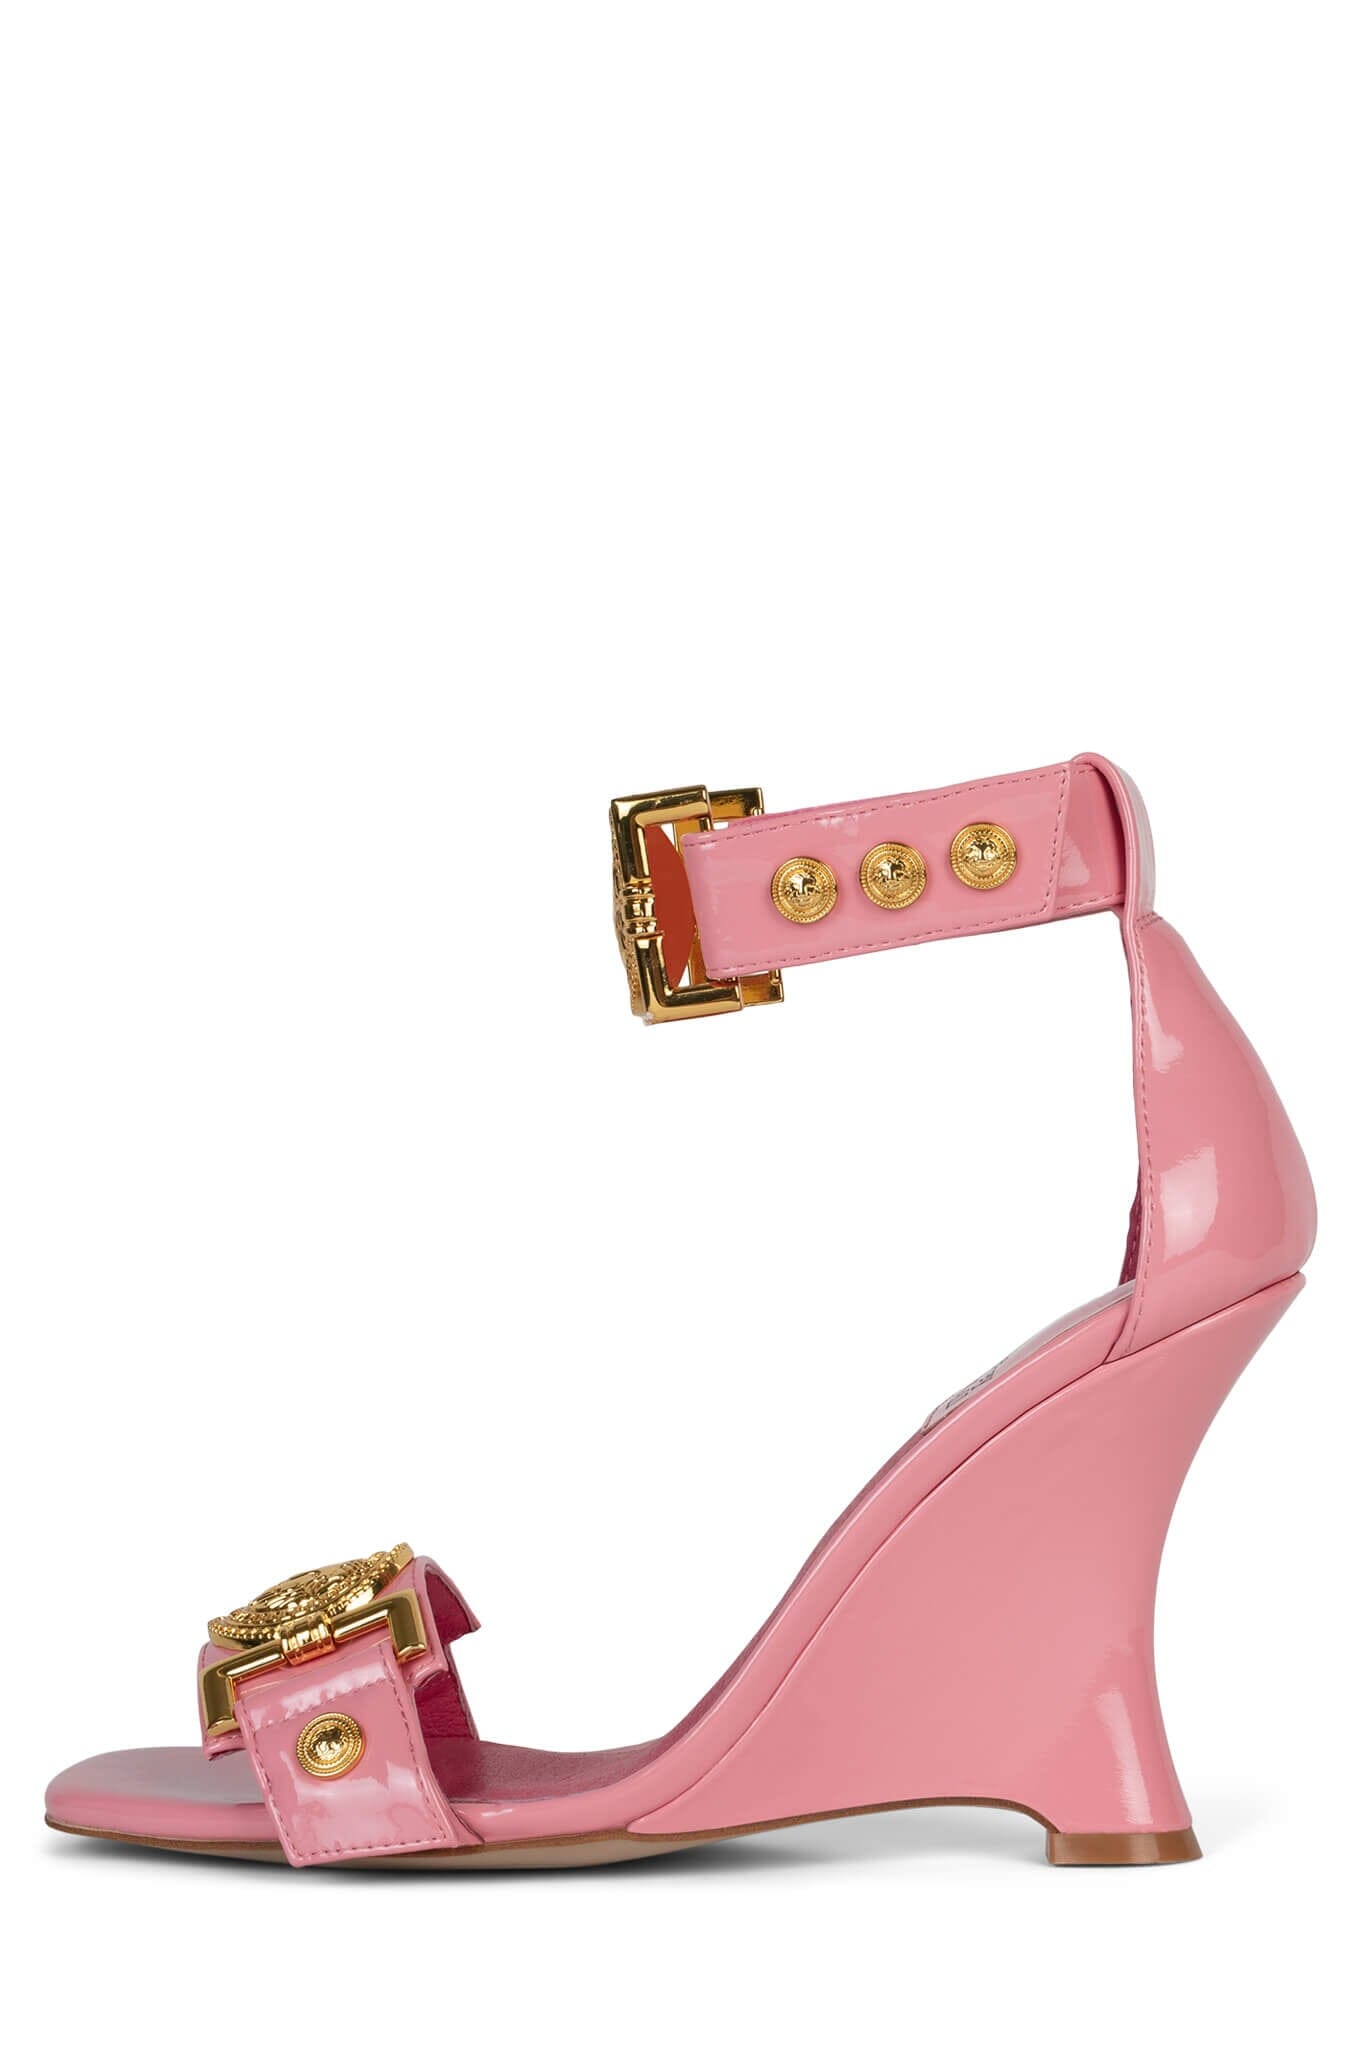 Versace Espadrilles Women Fabric Pink Gold